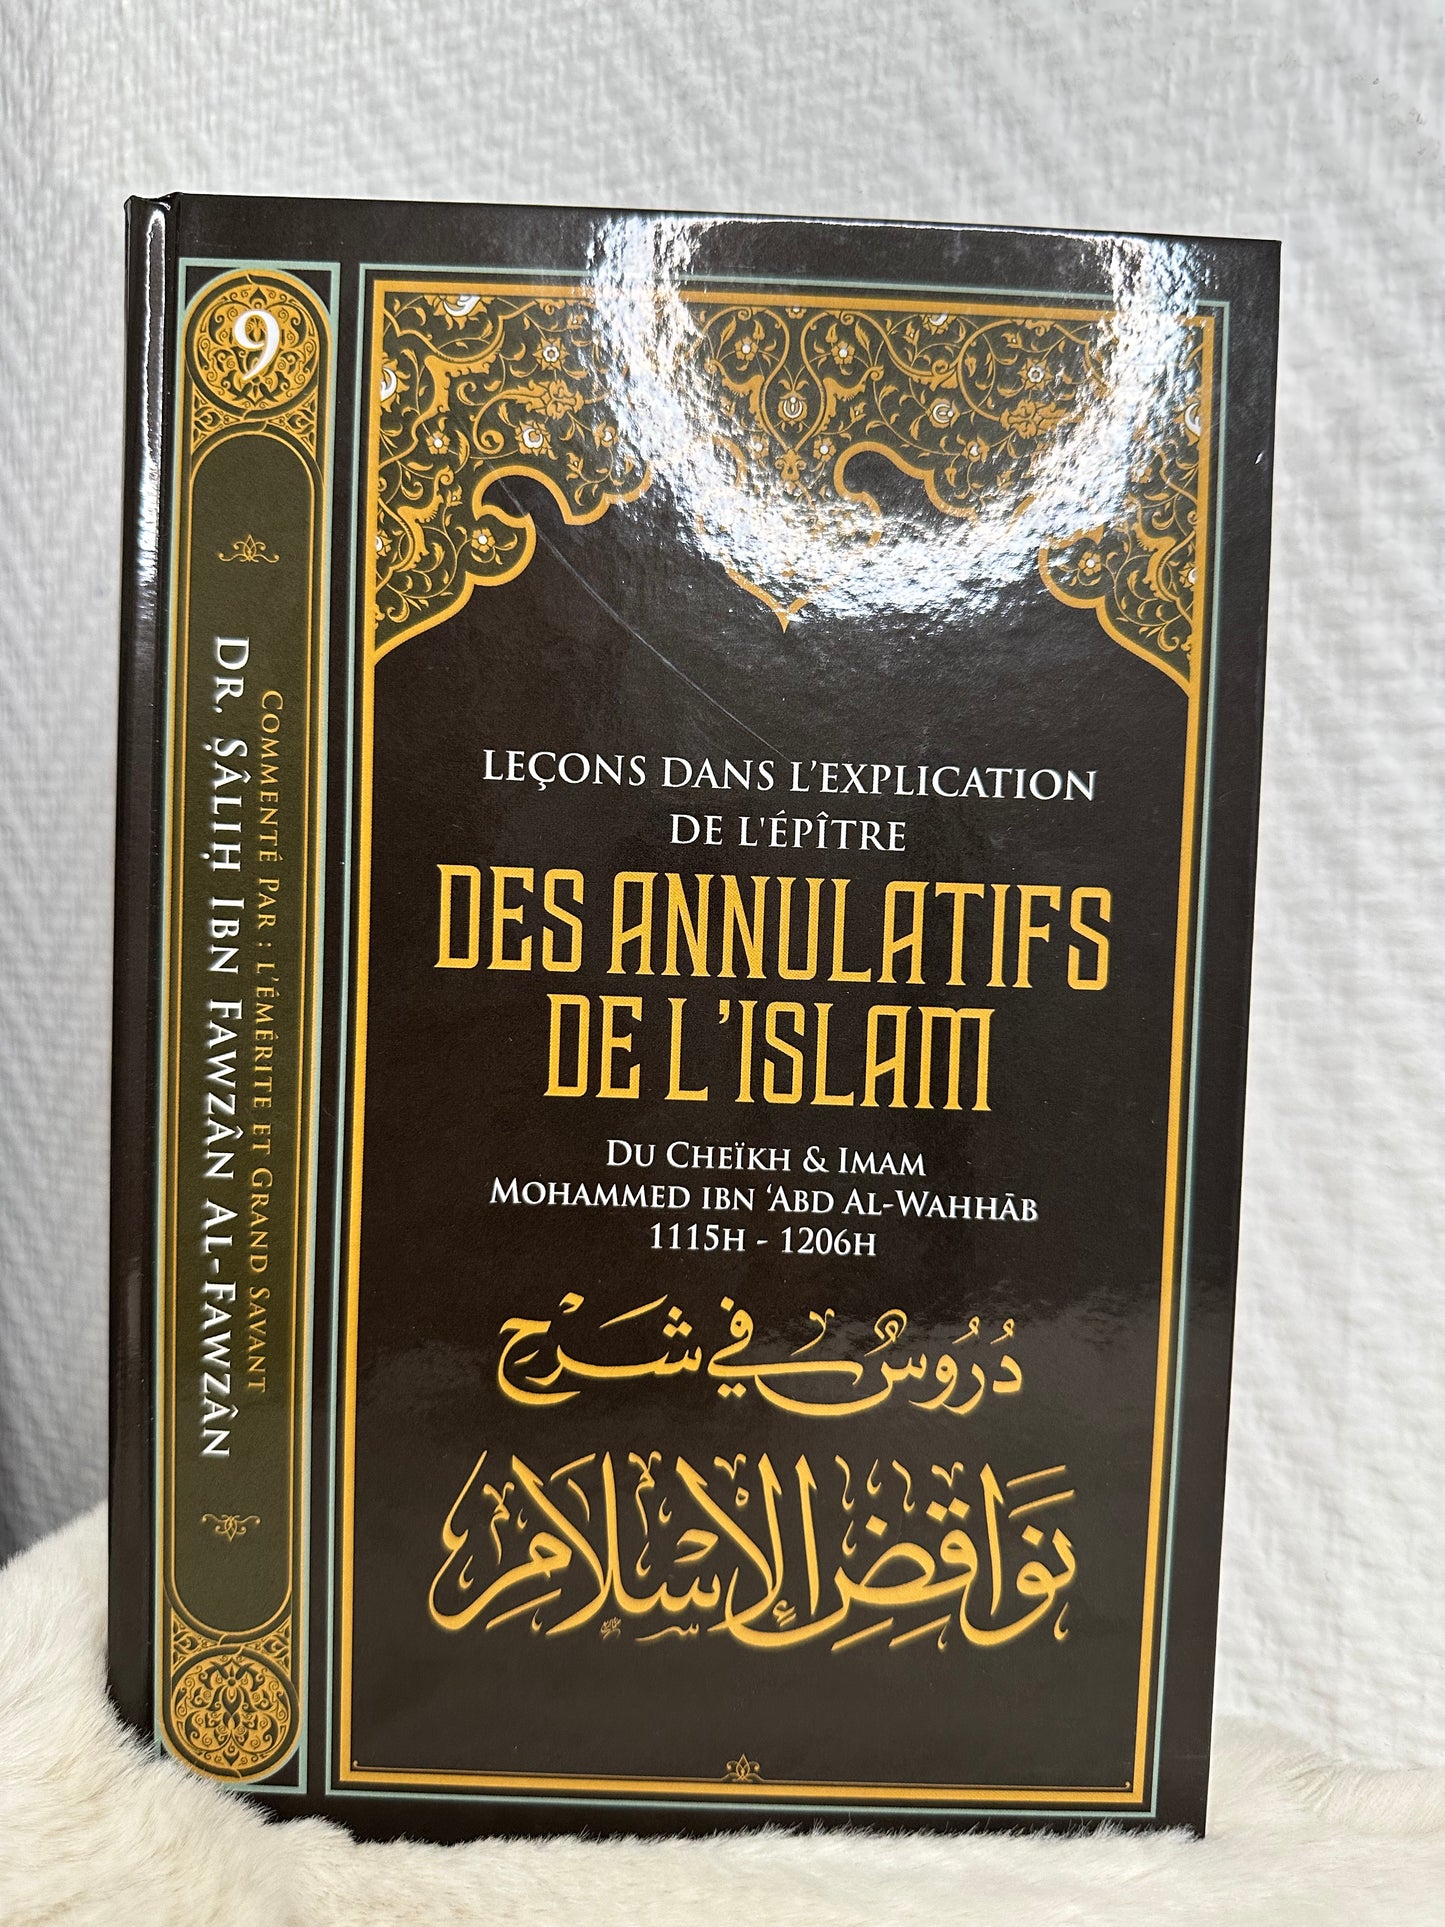 Leçons dans l'explication de l'épître Des annulatifs de l'Islam de Muhammad Ibn Abd Al-Wahhab, par Salih al Fawzan ibn al Fawzan